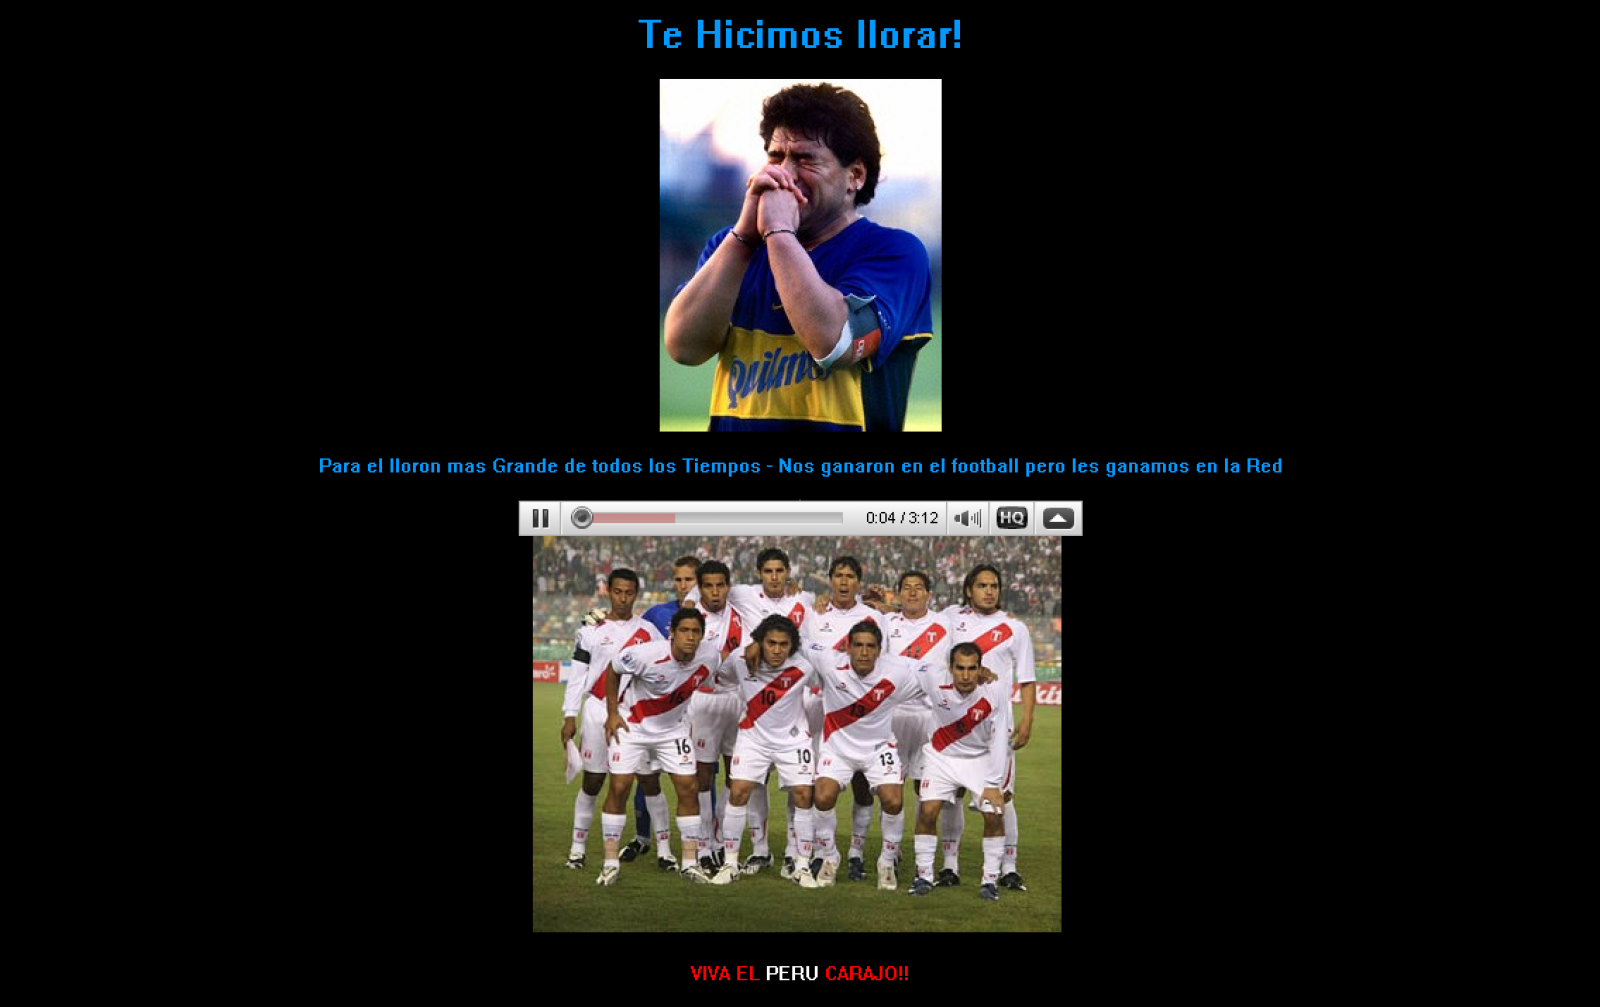 Así han dejado los piratas la web de Maradona: "Te hicimos llorar"